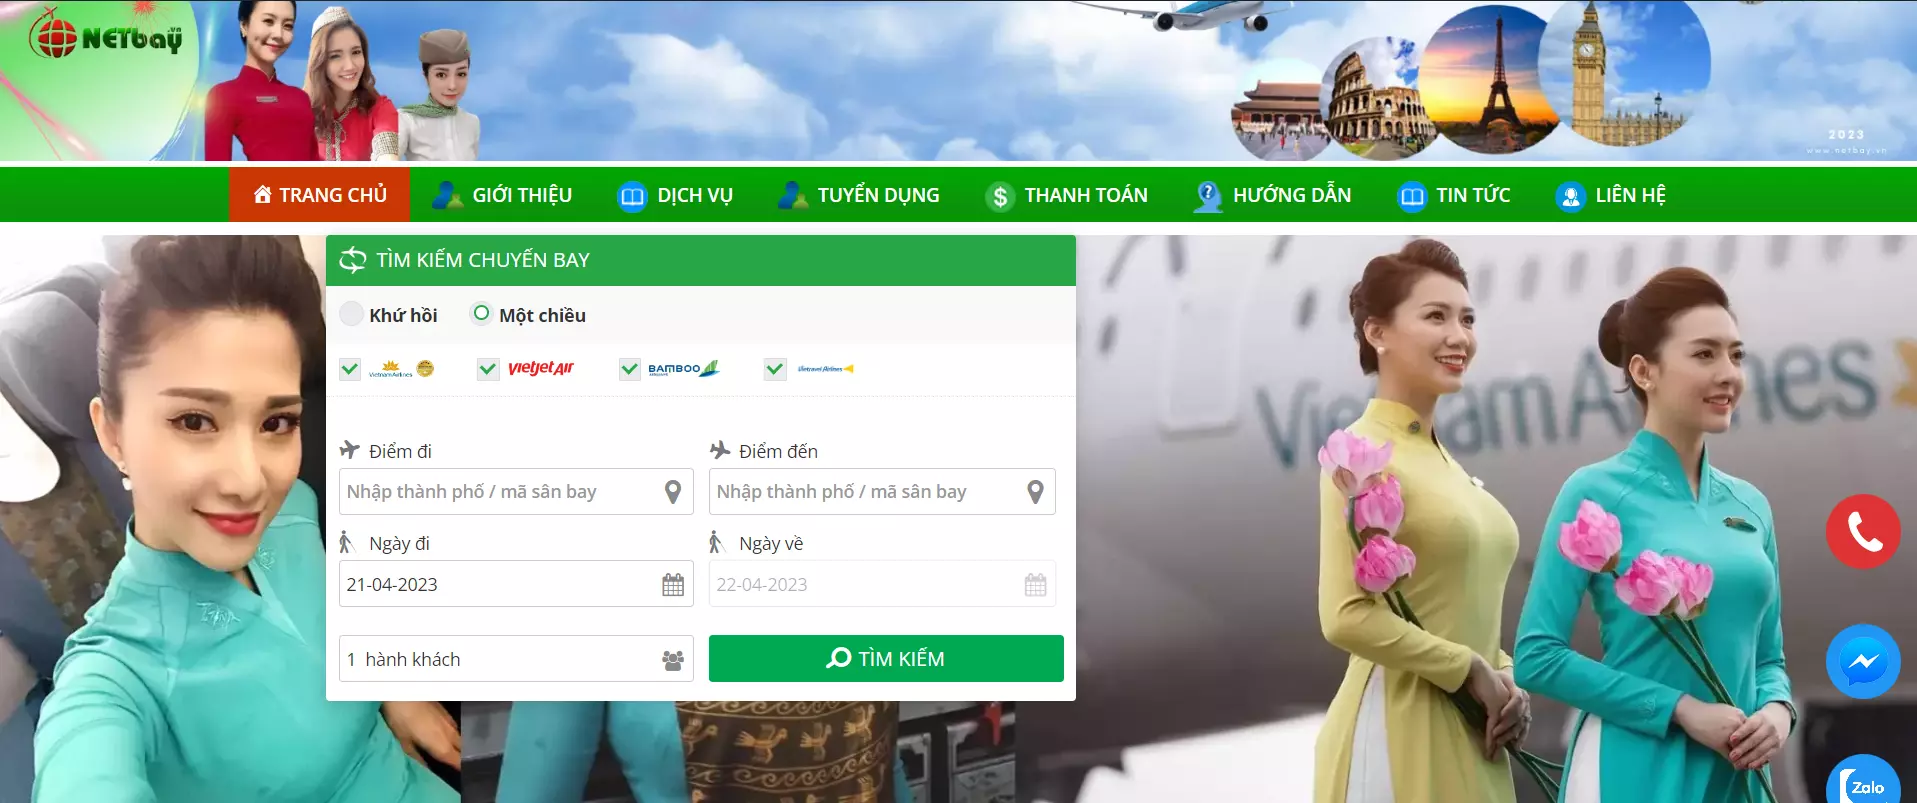 Đặt vé máy bay quốc tế giá rẻ tại netbay